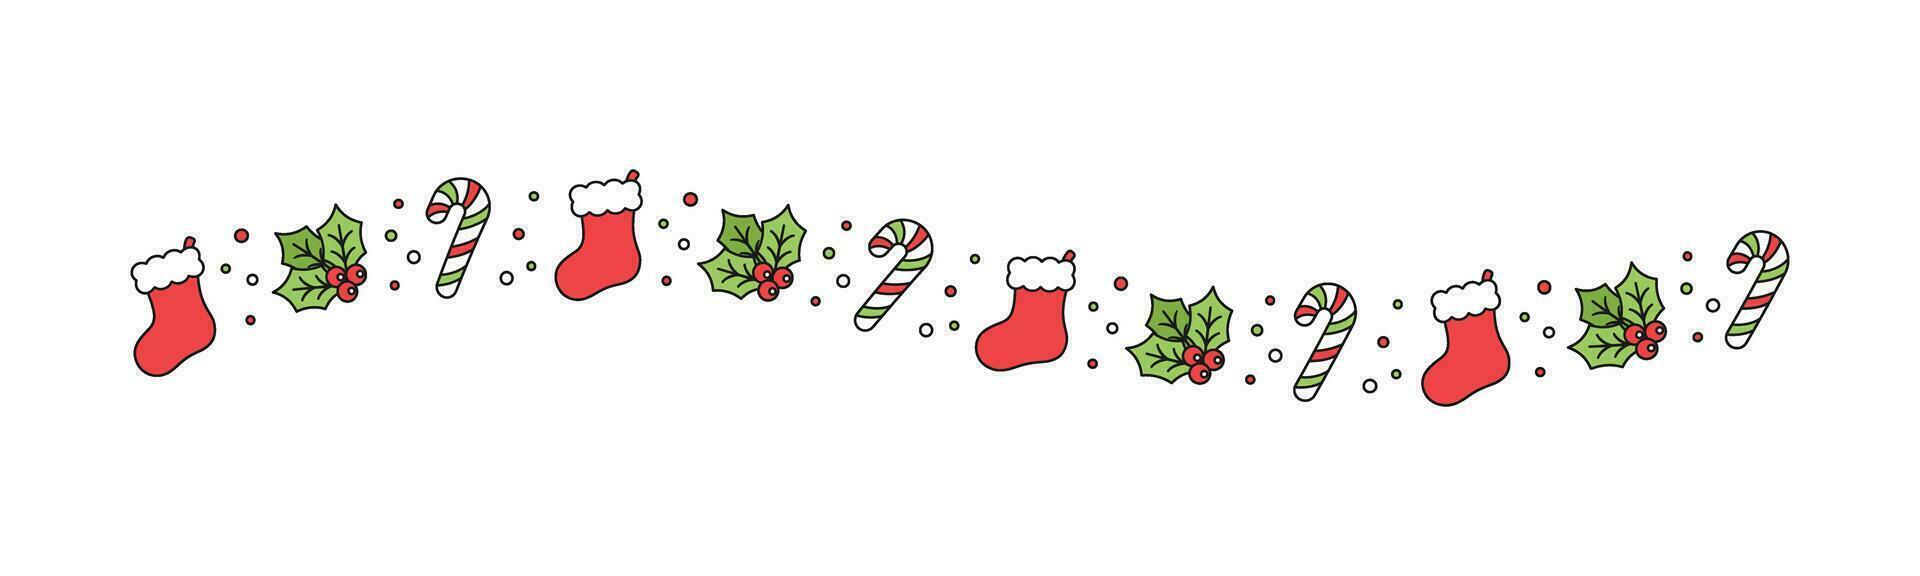 Navidad temática decorativo ondulado línea frontera y texto divisor, Navidad media, caramelo caña y muérdago modelo. vector ilustración.